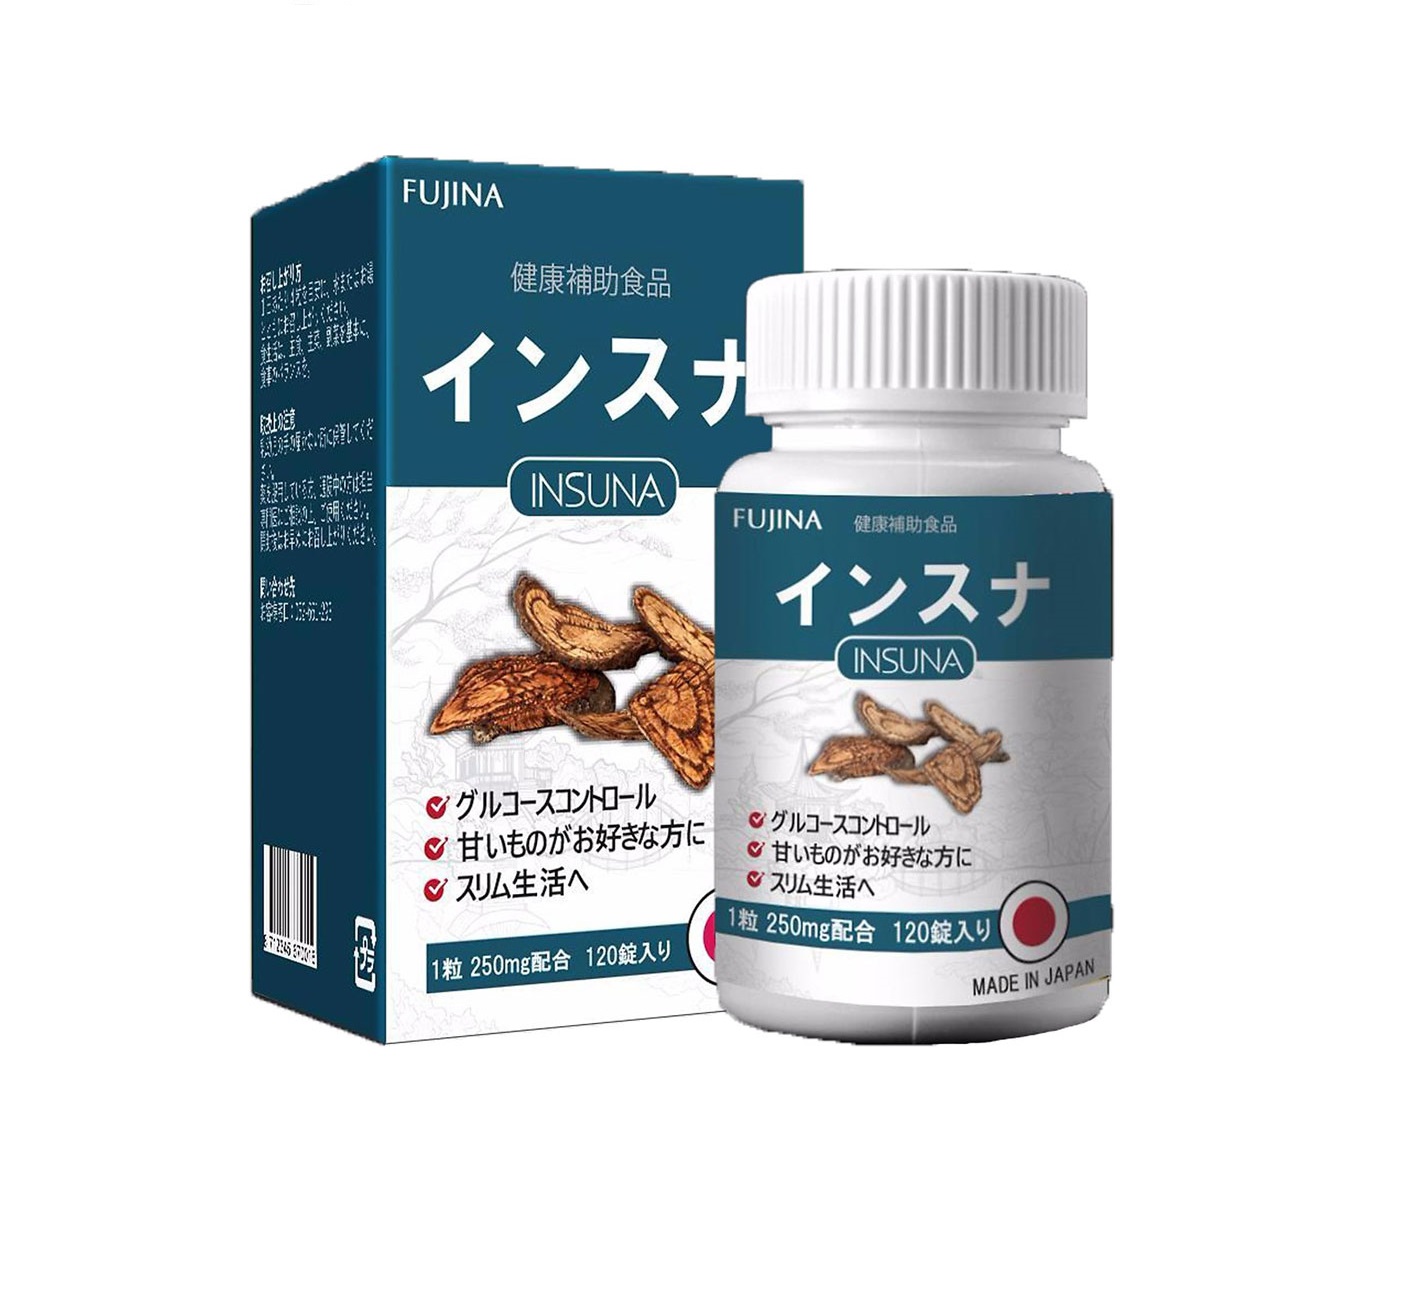 INSUNA - Viên uống hỗ trợ trị tiểu đường / đái tháo đường đến từ Nhật Bản (Hộp 120 viên)